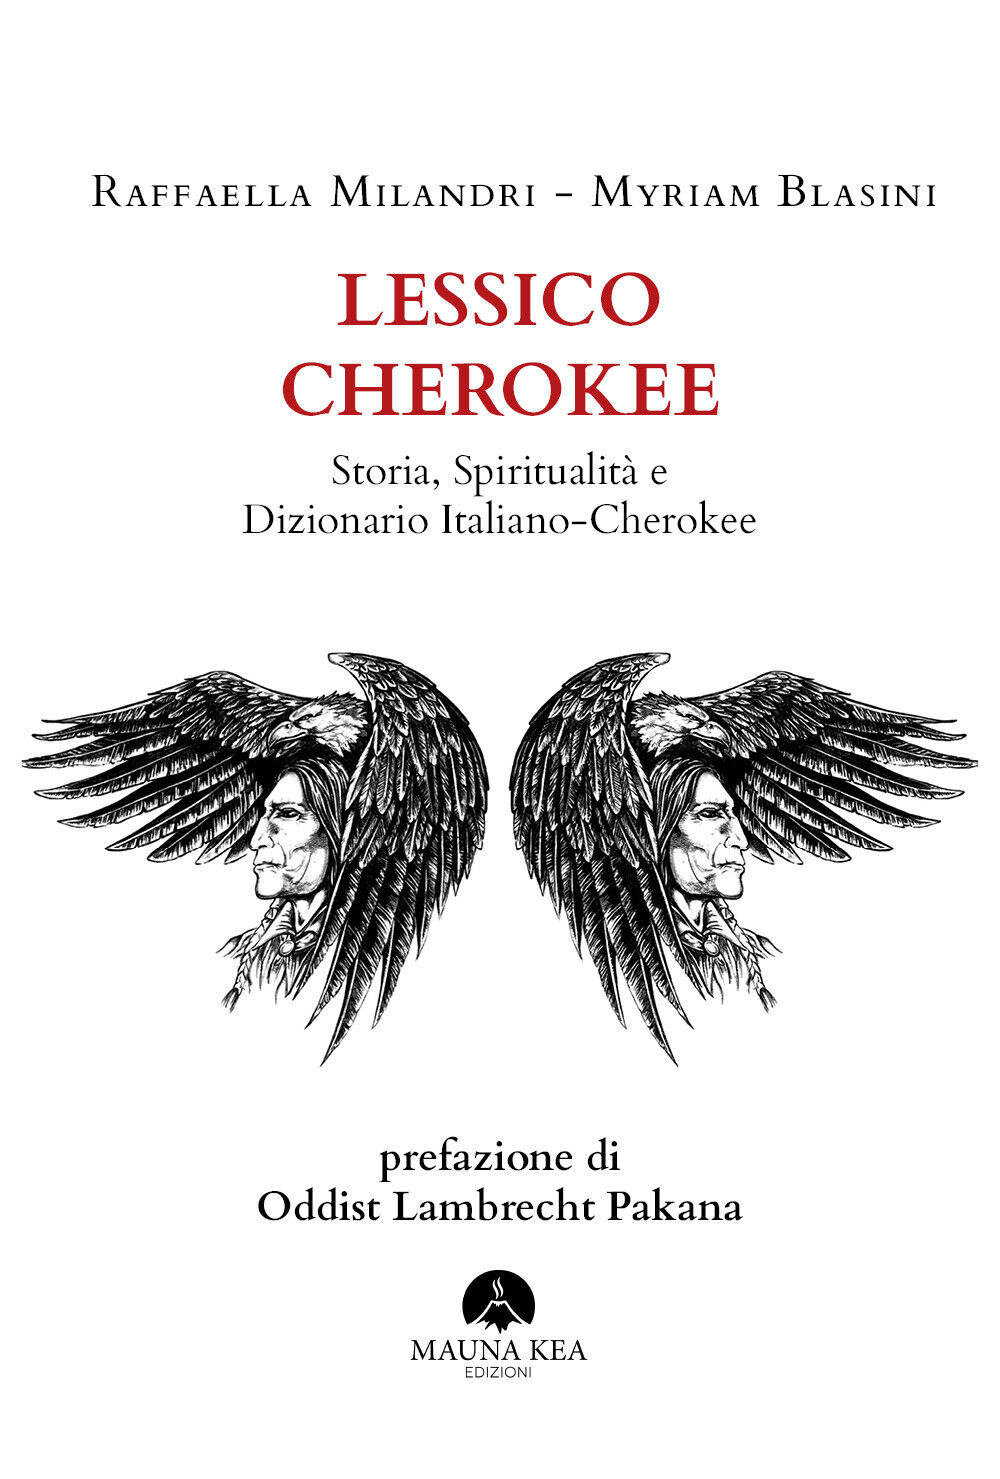 Lessico Cherokee Storia, Spiritualit? e Dizionario Italiano-Cherokee di Raffaell libro usato